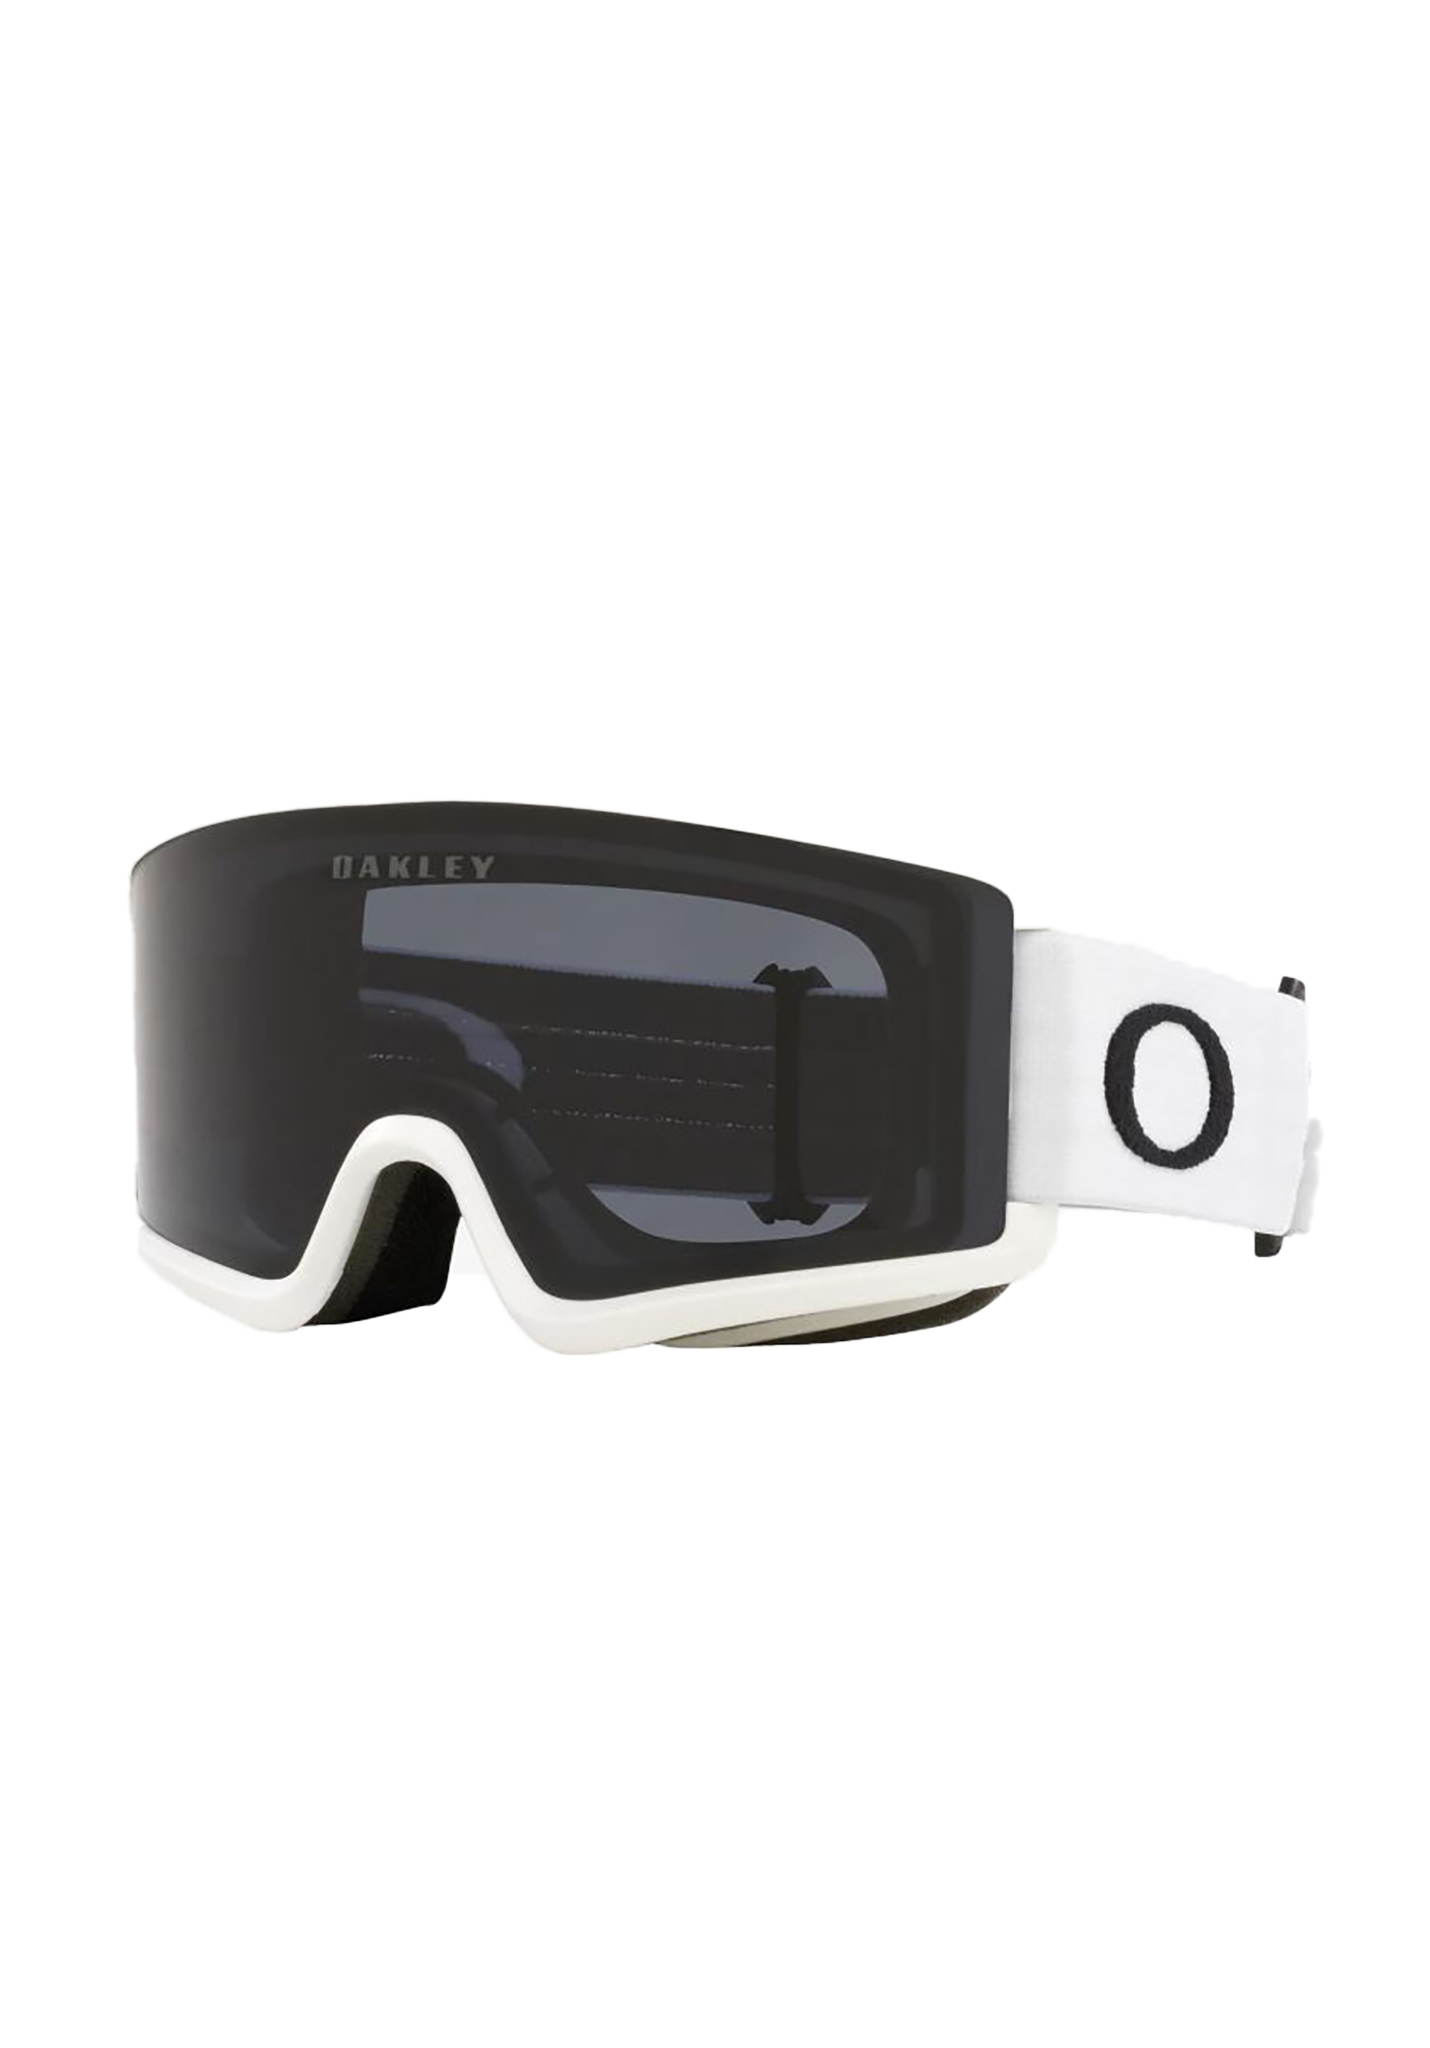 Oakley Target Line S Snowboardbrillen mattes weiß/dunkelgrau One Size